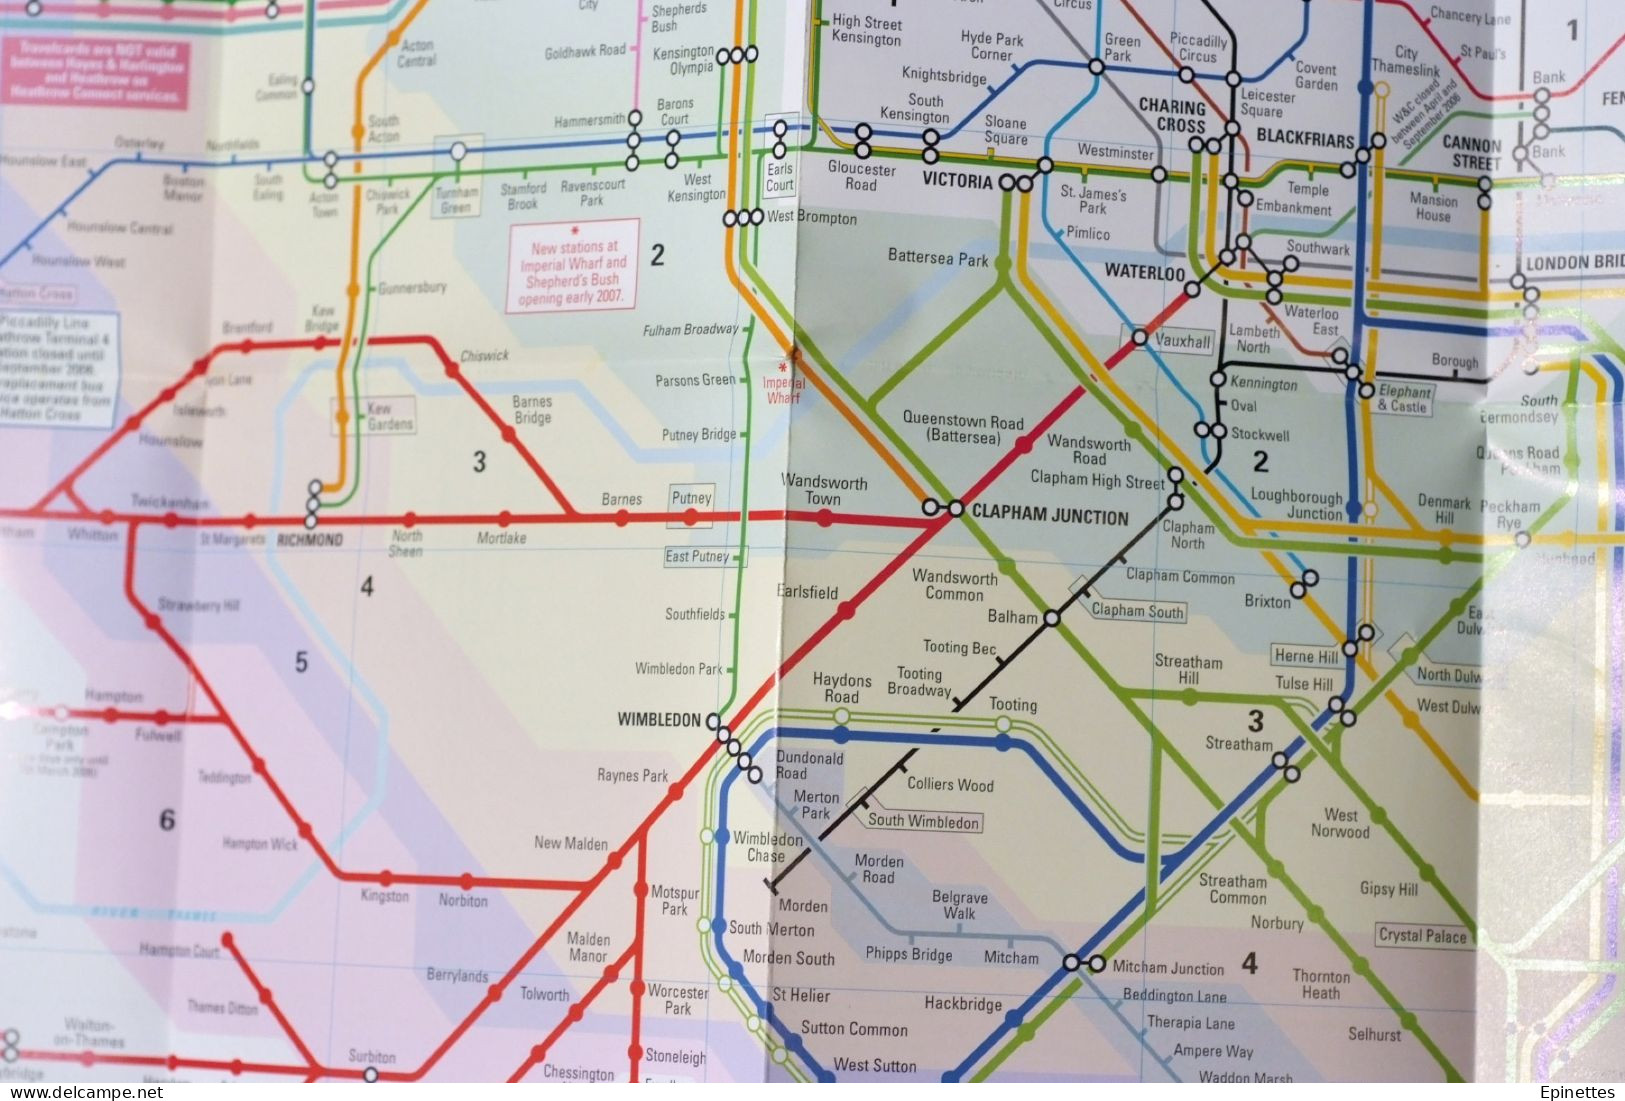 Plan dépliant, métro Londres + transports régionaux 2006 Rail & underground services, connections, London & South-East